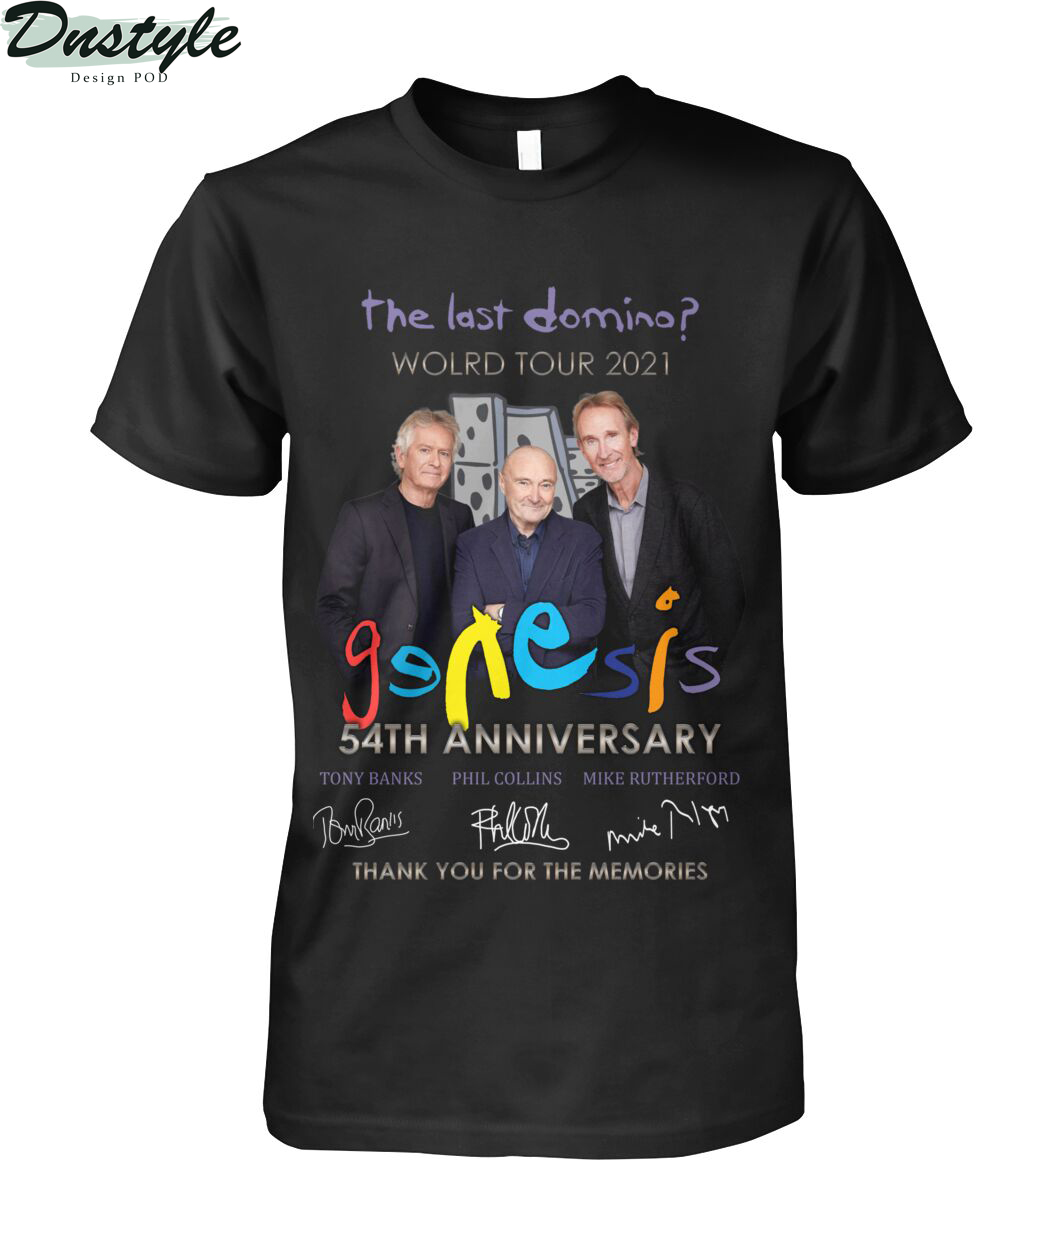 The last domino world tour 2021 Genesis 54th anniversary shirt